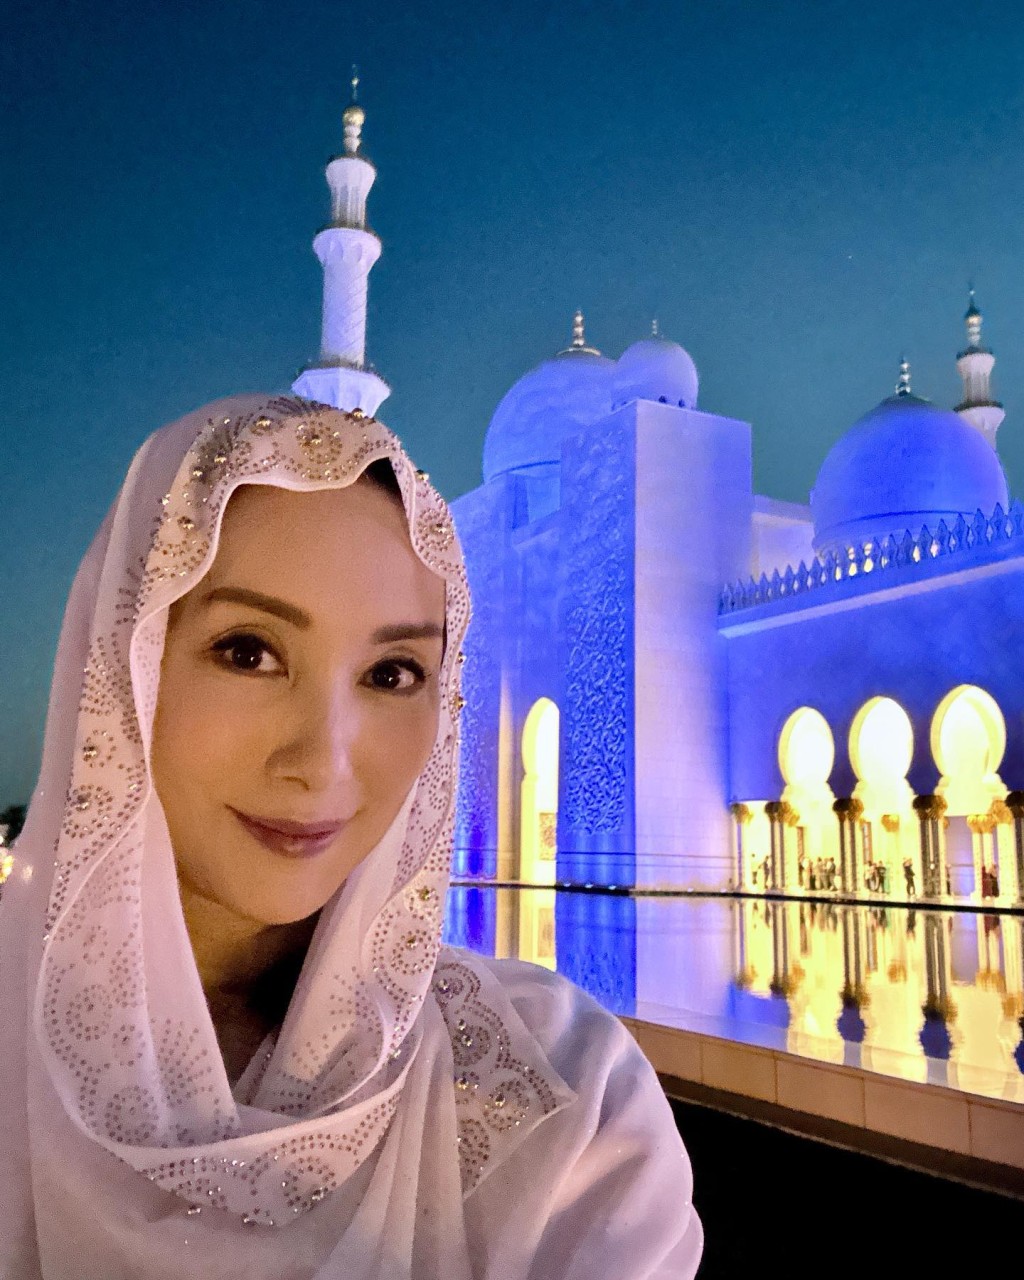 参观清真寺时必须与中东妇女一样换上传统服饰。